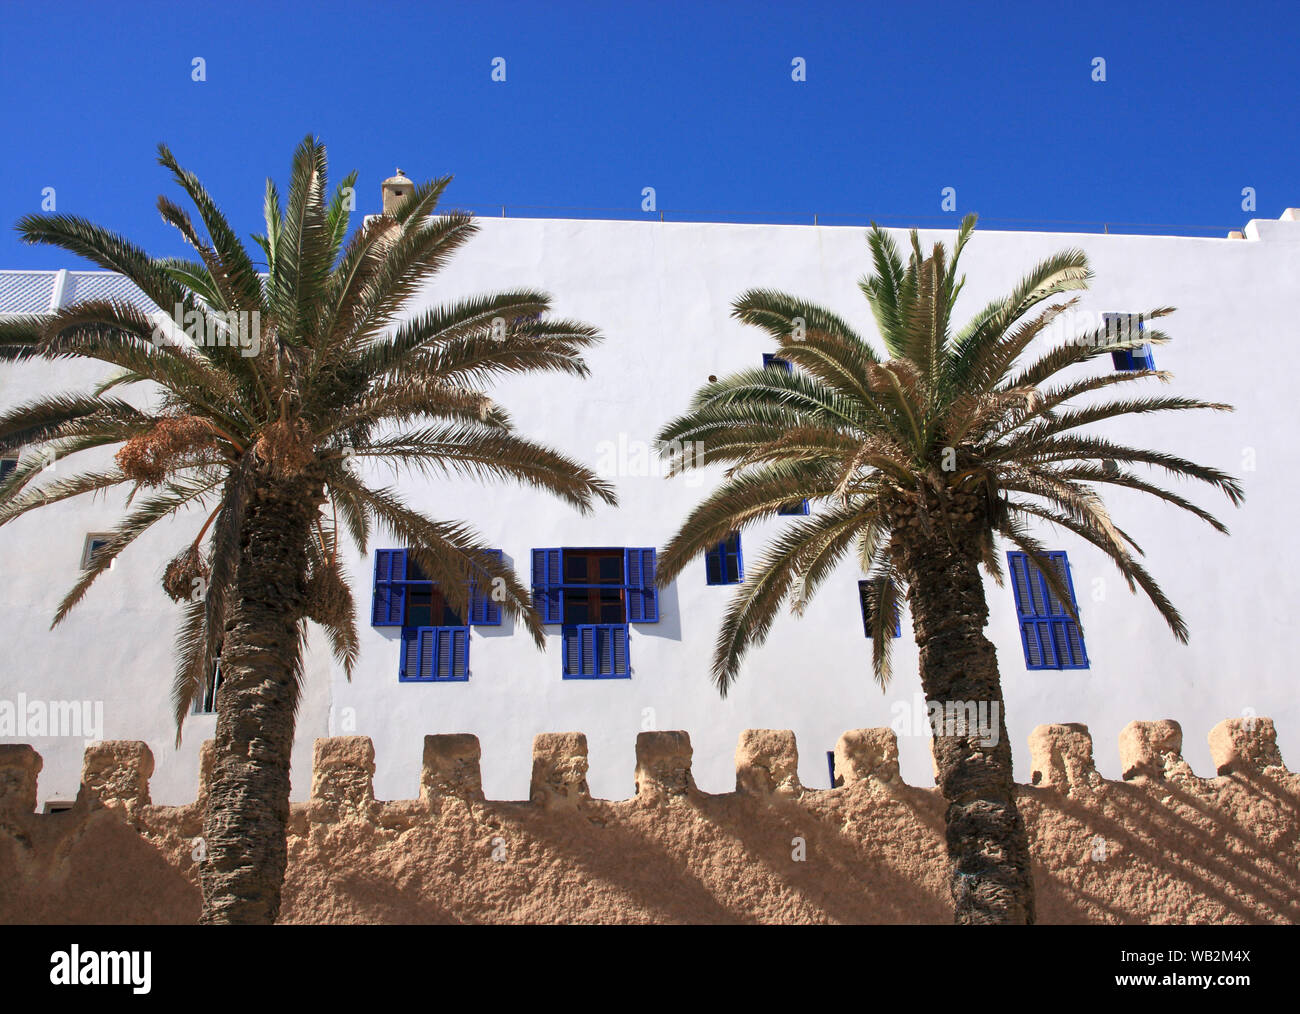 Il Marocco quartiere di Marrakech, Essaouira UNESCO World Heritage Site - cinta muraria ed edifici imbiancati nel centro storico della medina. Foto Stock